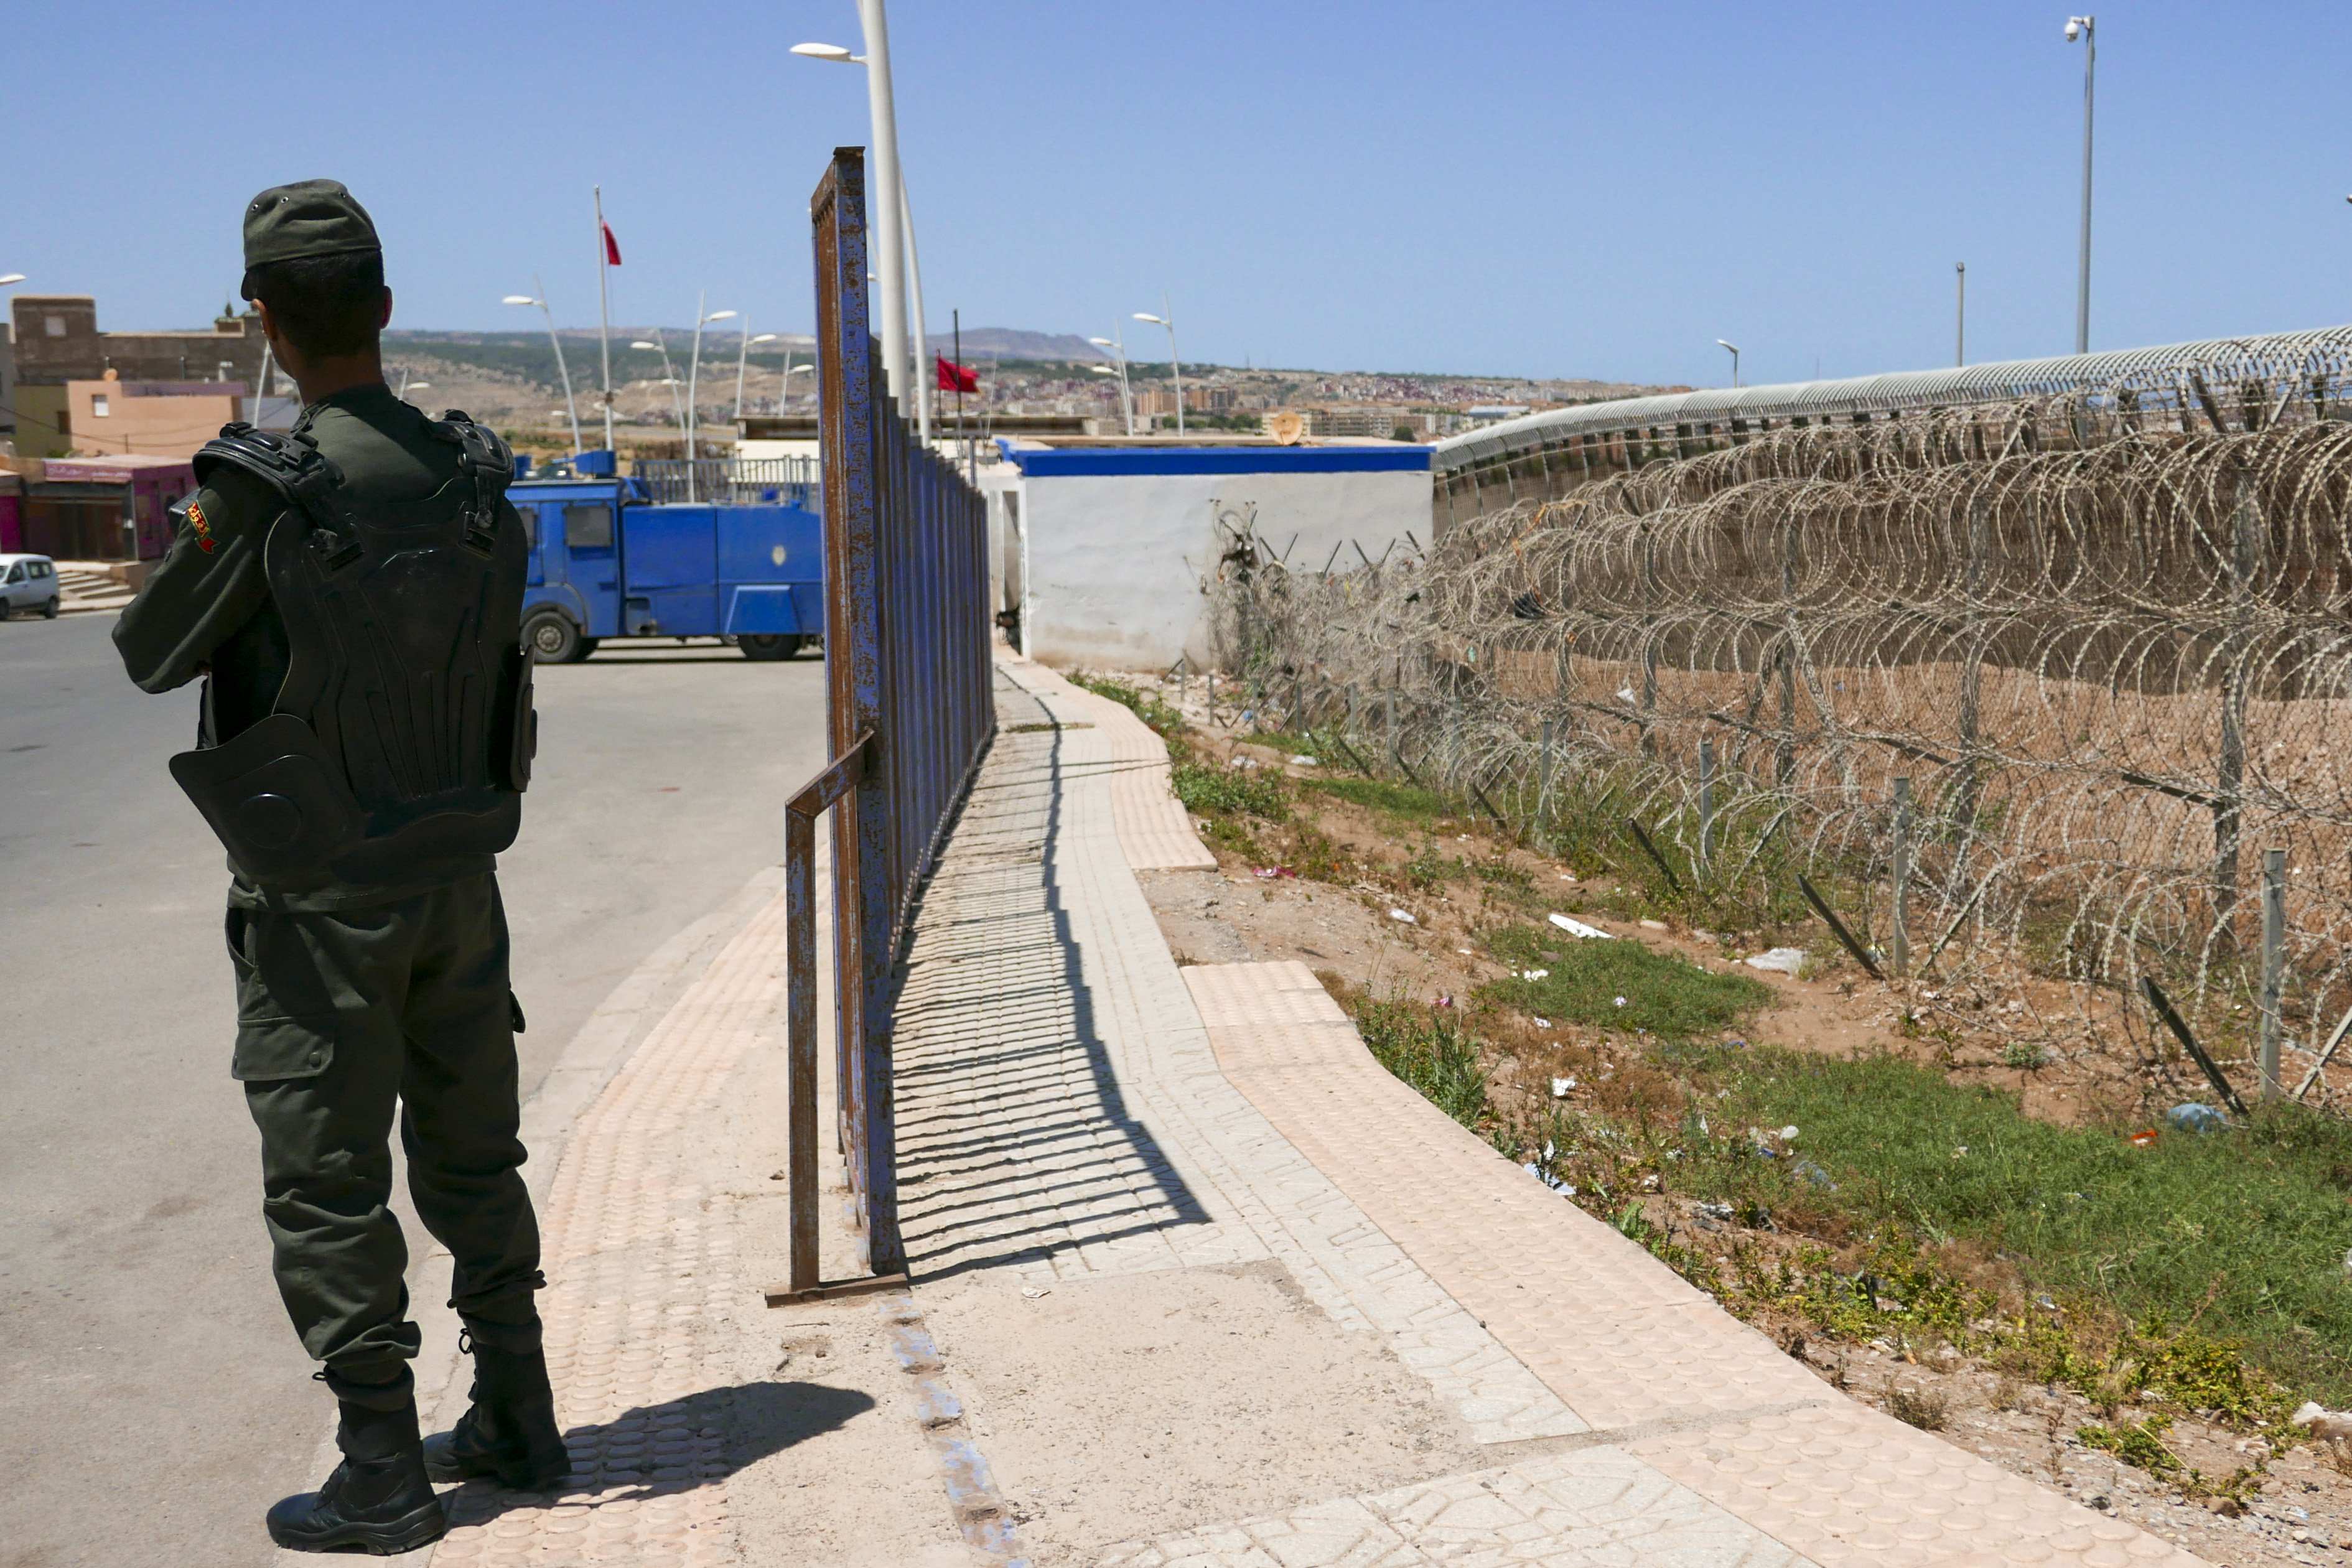 Polèmica per l'actuació de policies marroquins en territori espanyol contra migrants